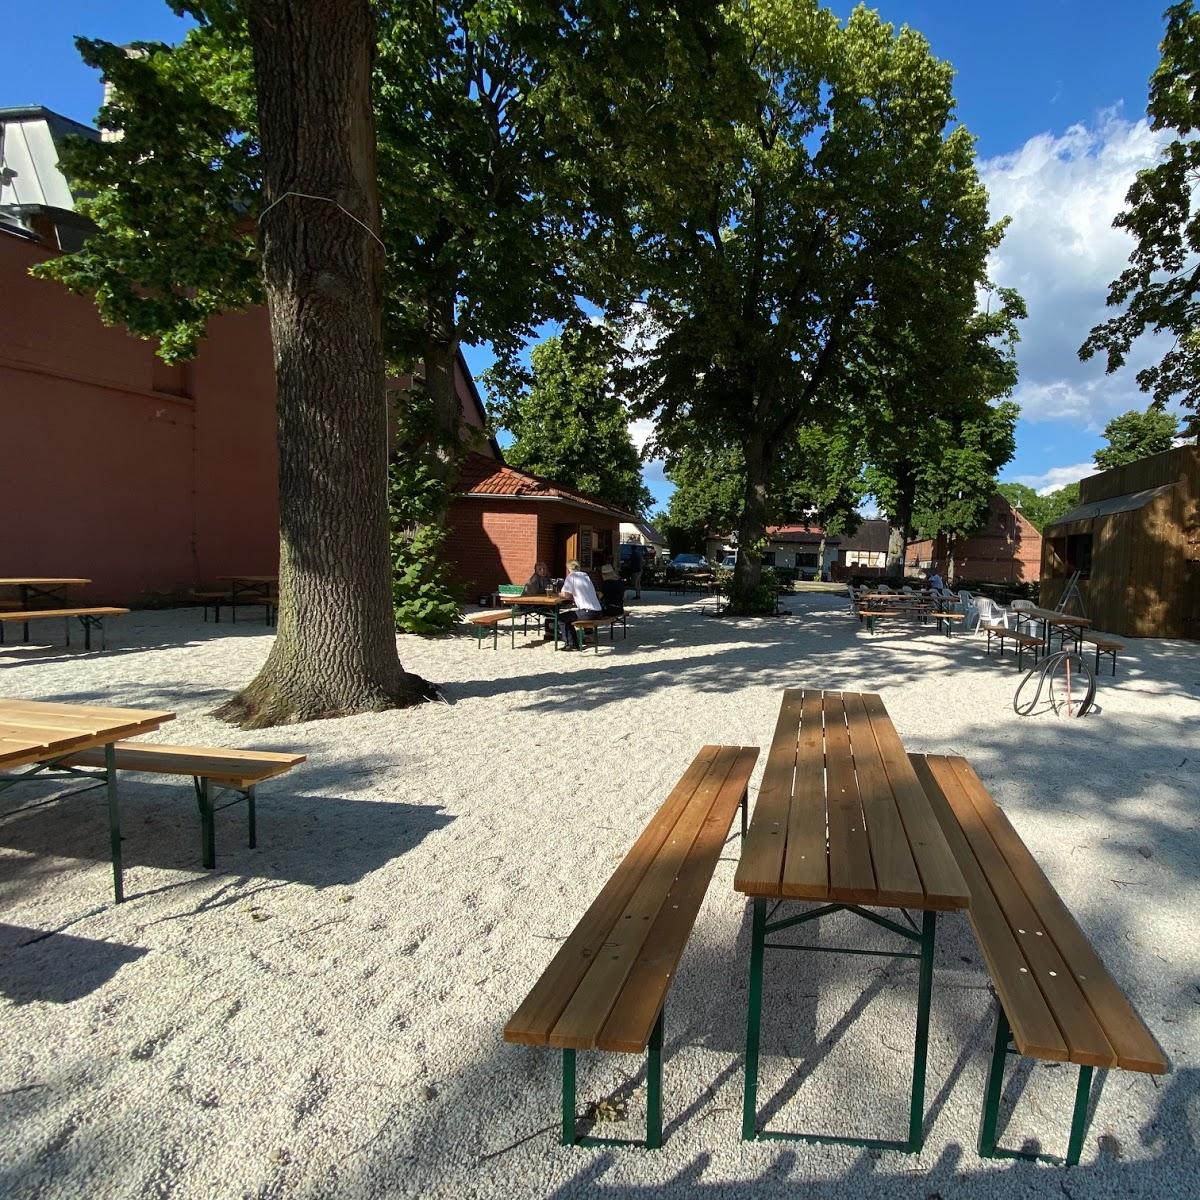 Restaurant "Landhaus Kastanie" in Neuruppin